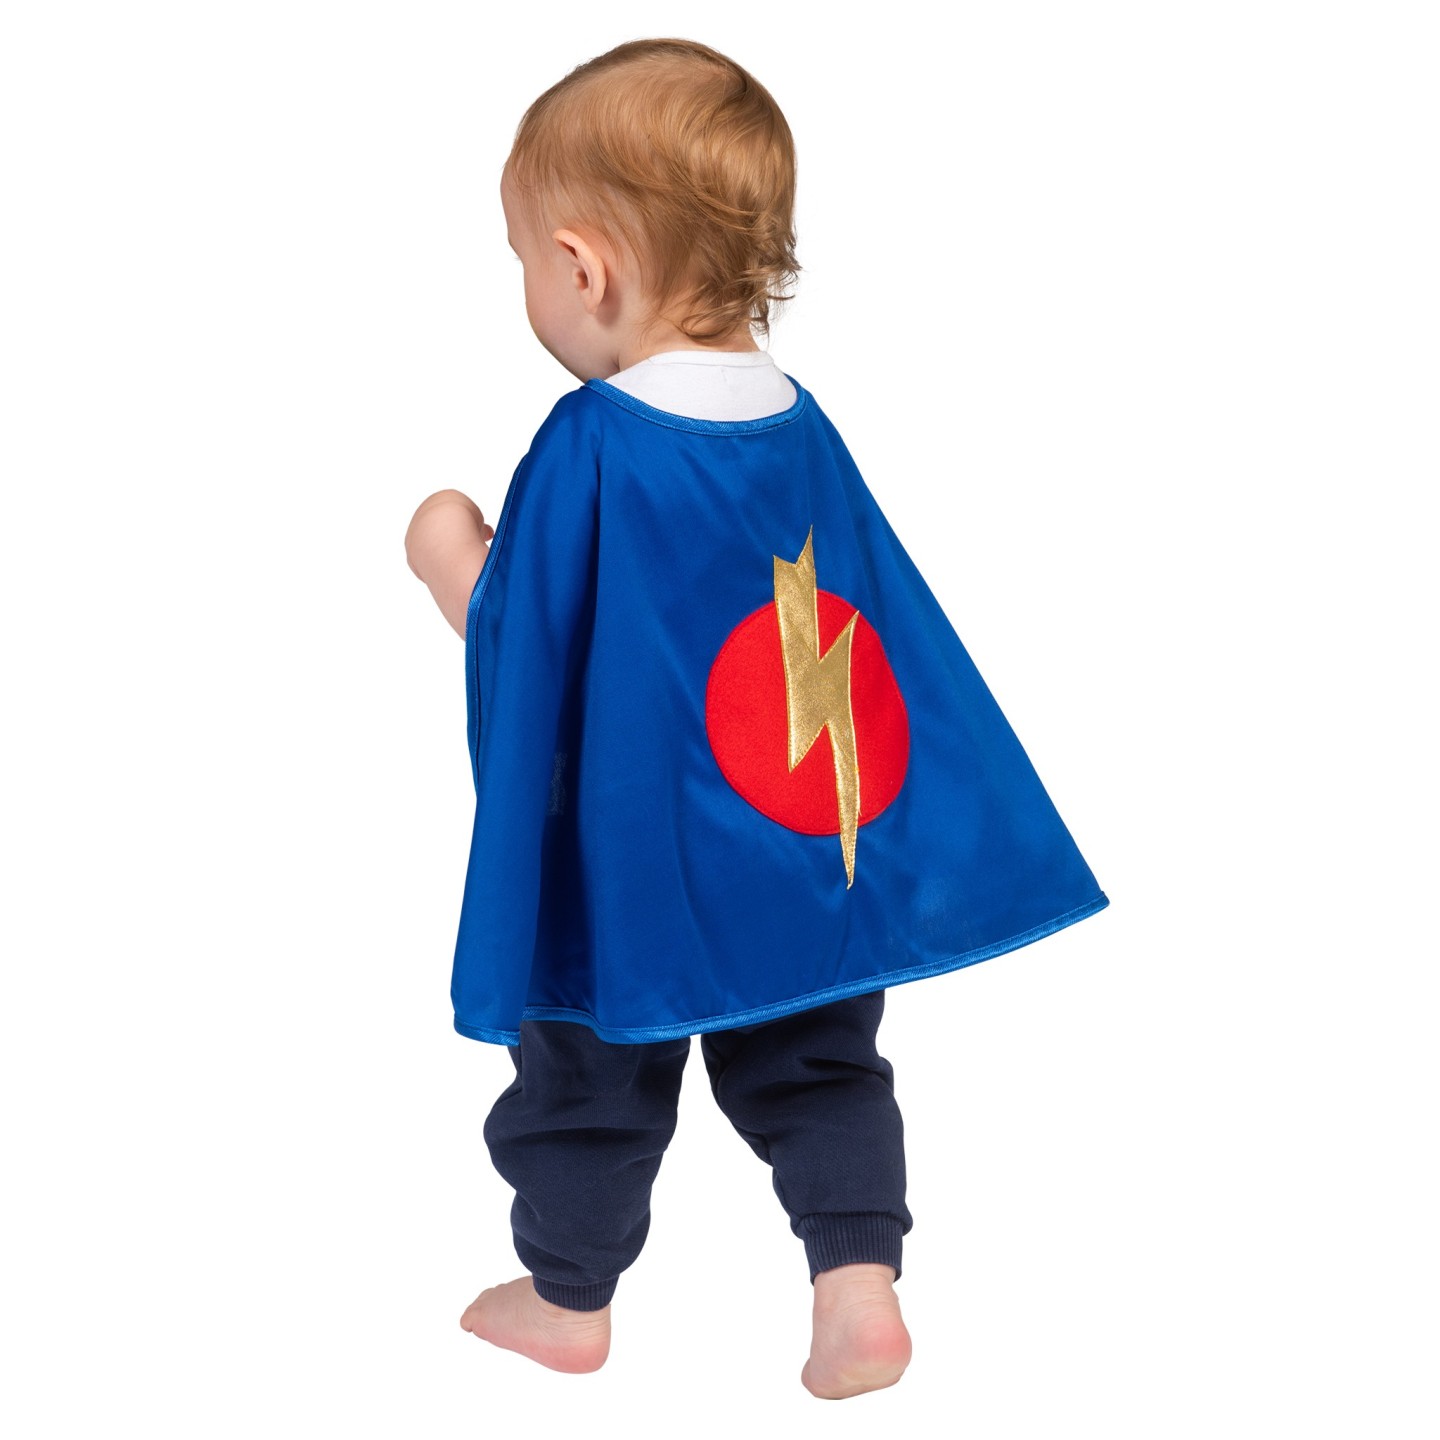 NieuwZeeland Dusver voorspelling Superhelden vape baby Superman | Jokershop.be - Baby verkleedkleren